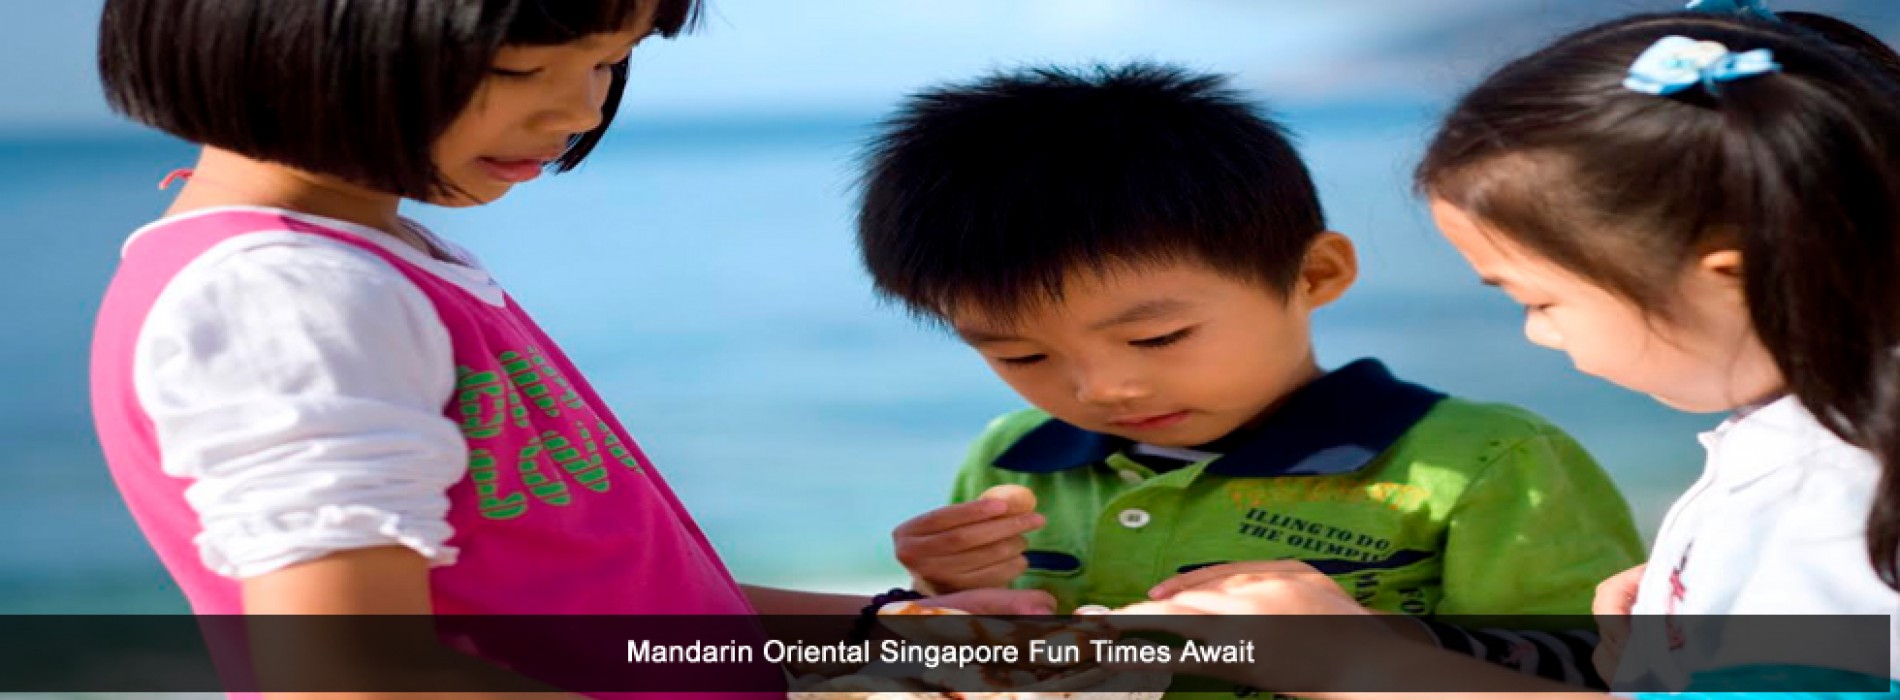 Fun times await at Mandarin Oriental, Singapore